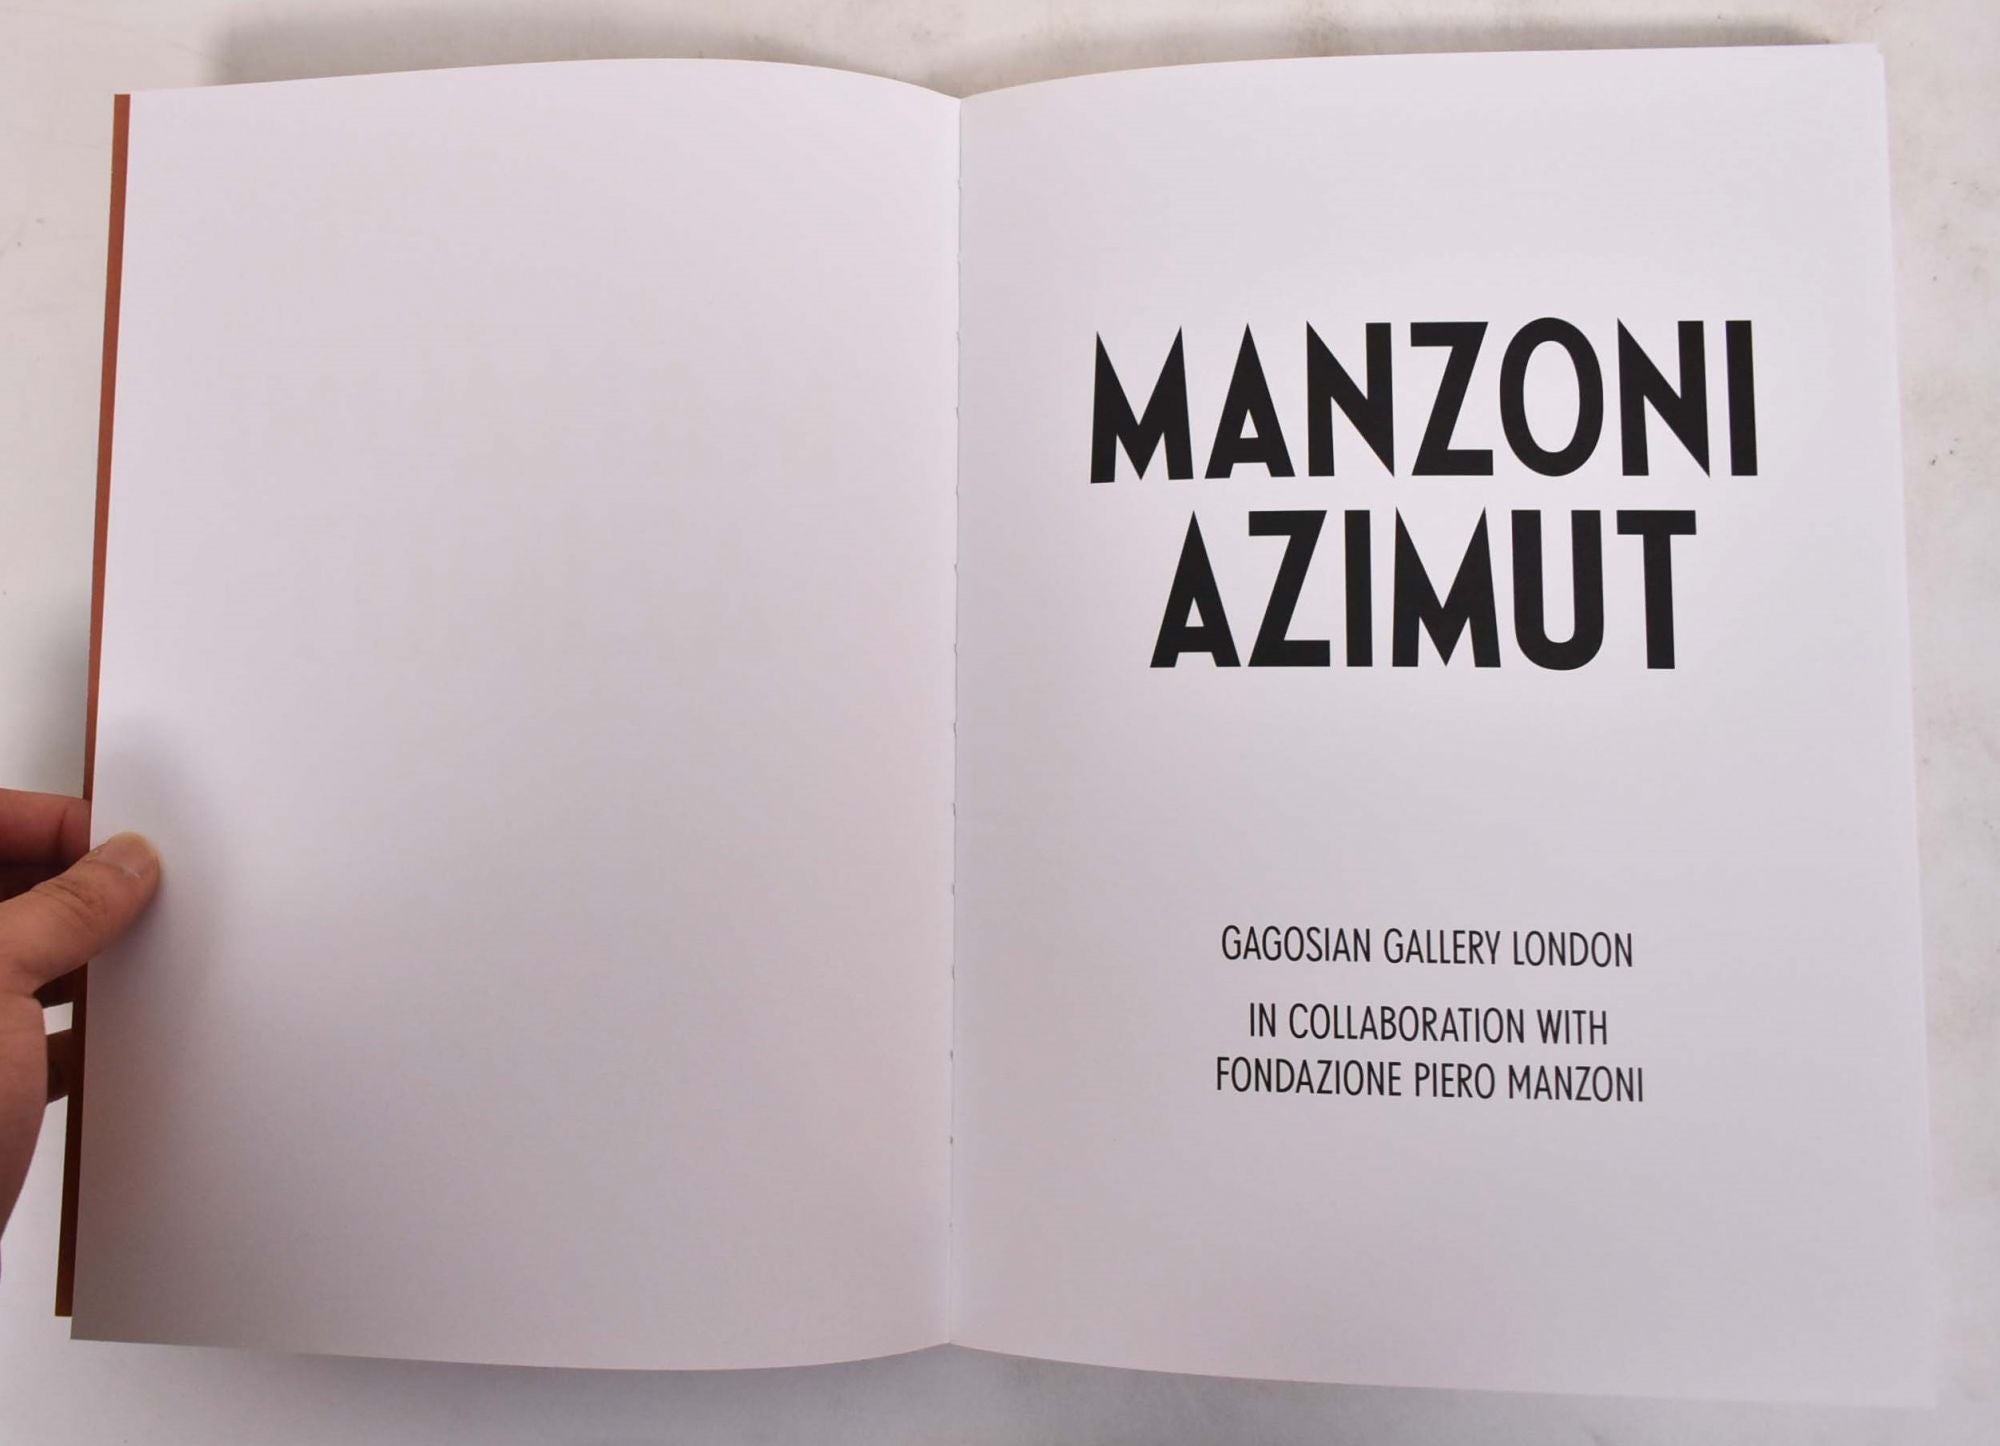 【販売新作】【美品】MANZONI: AZIMUT アート・デザイン・音楽